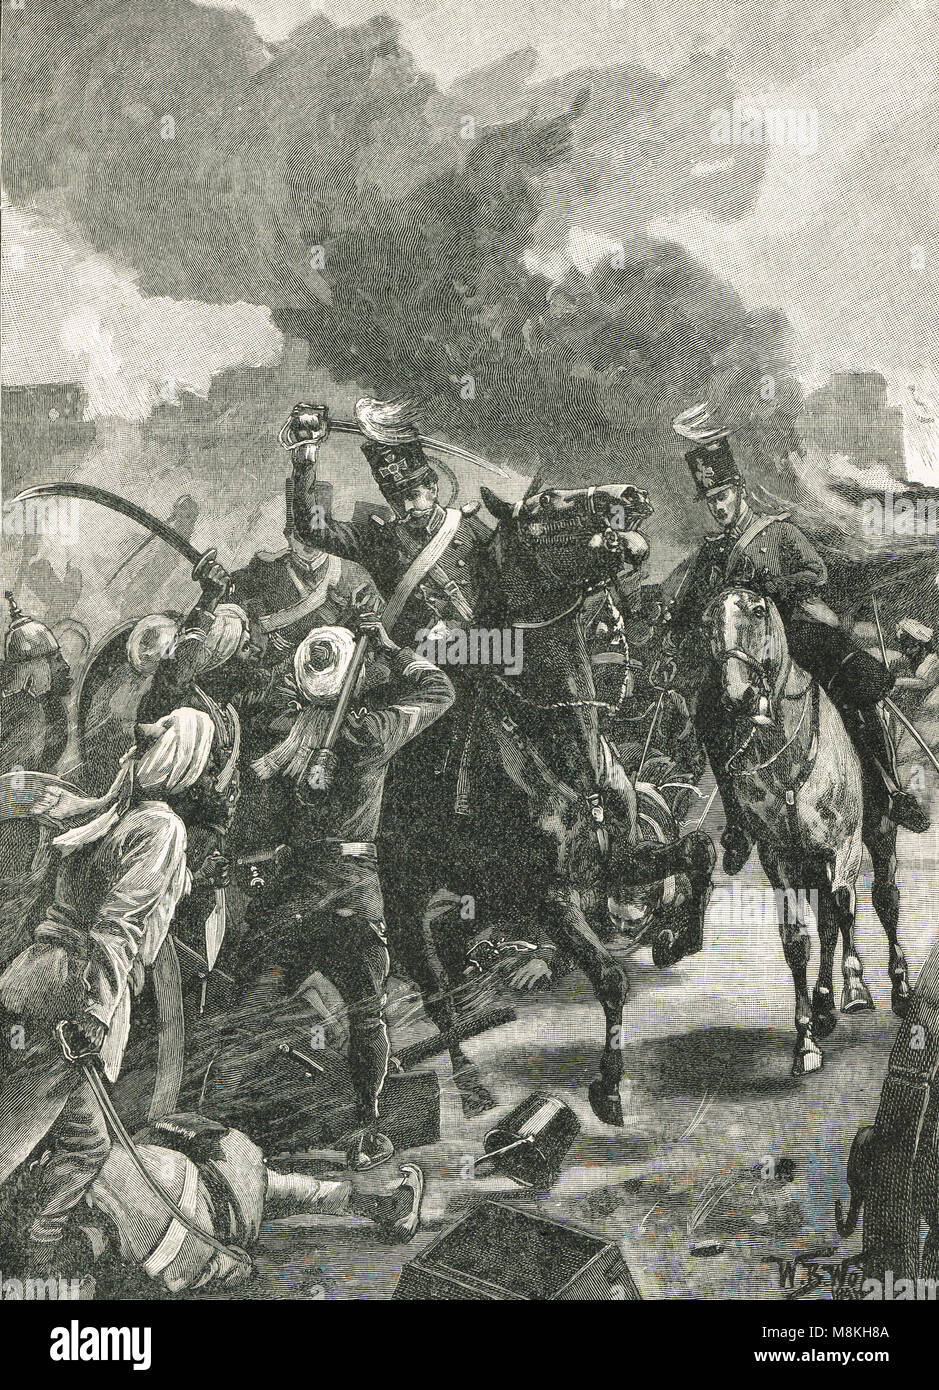 Sir Joseph Thackwell, menant la charge de cavalerie, bataille de Sobraon, 10 février 1846 Banque D'Images